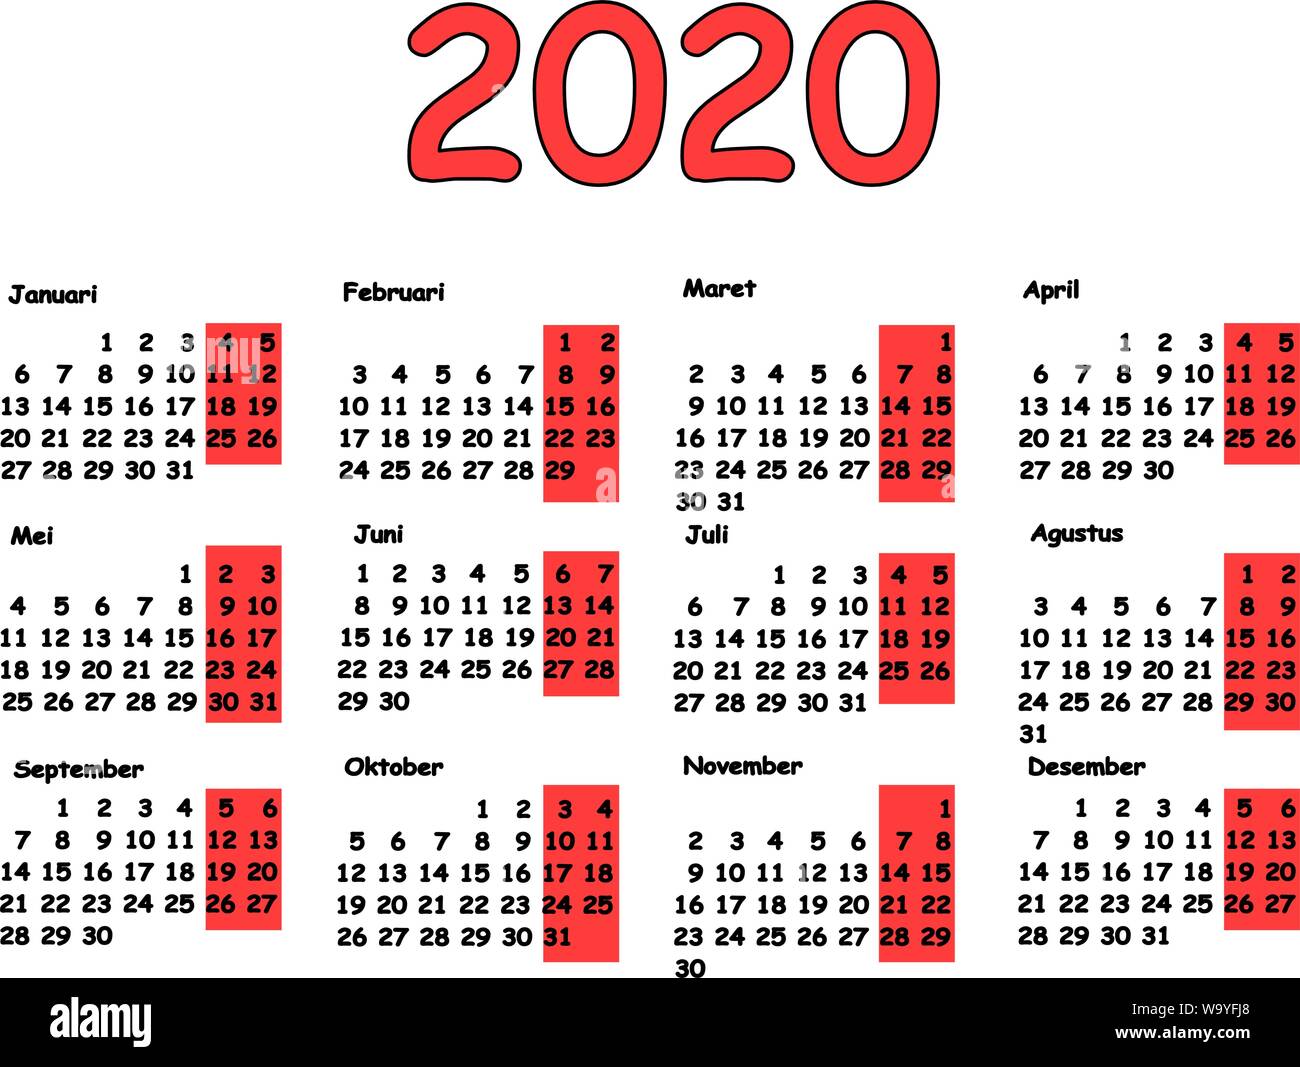 2020 Kalender grid indonesische Sprache. Monatliche Planung für das Jahr. Abbildung für Kalender Design. Stock Vektor